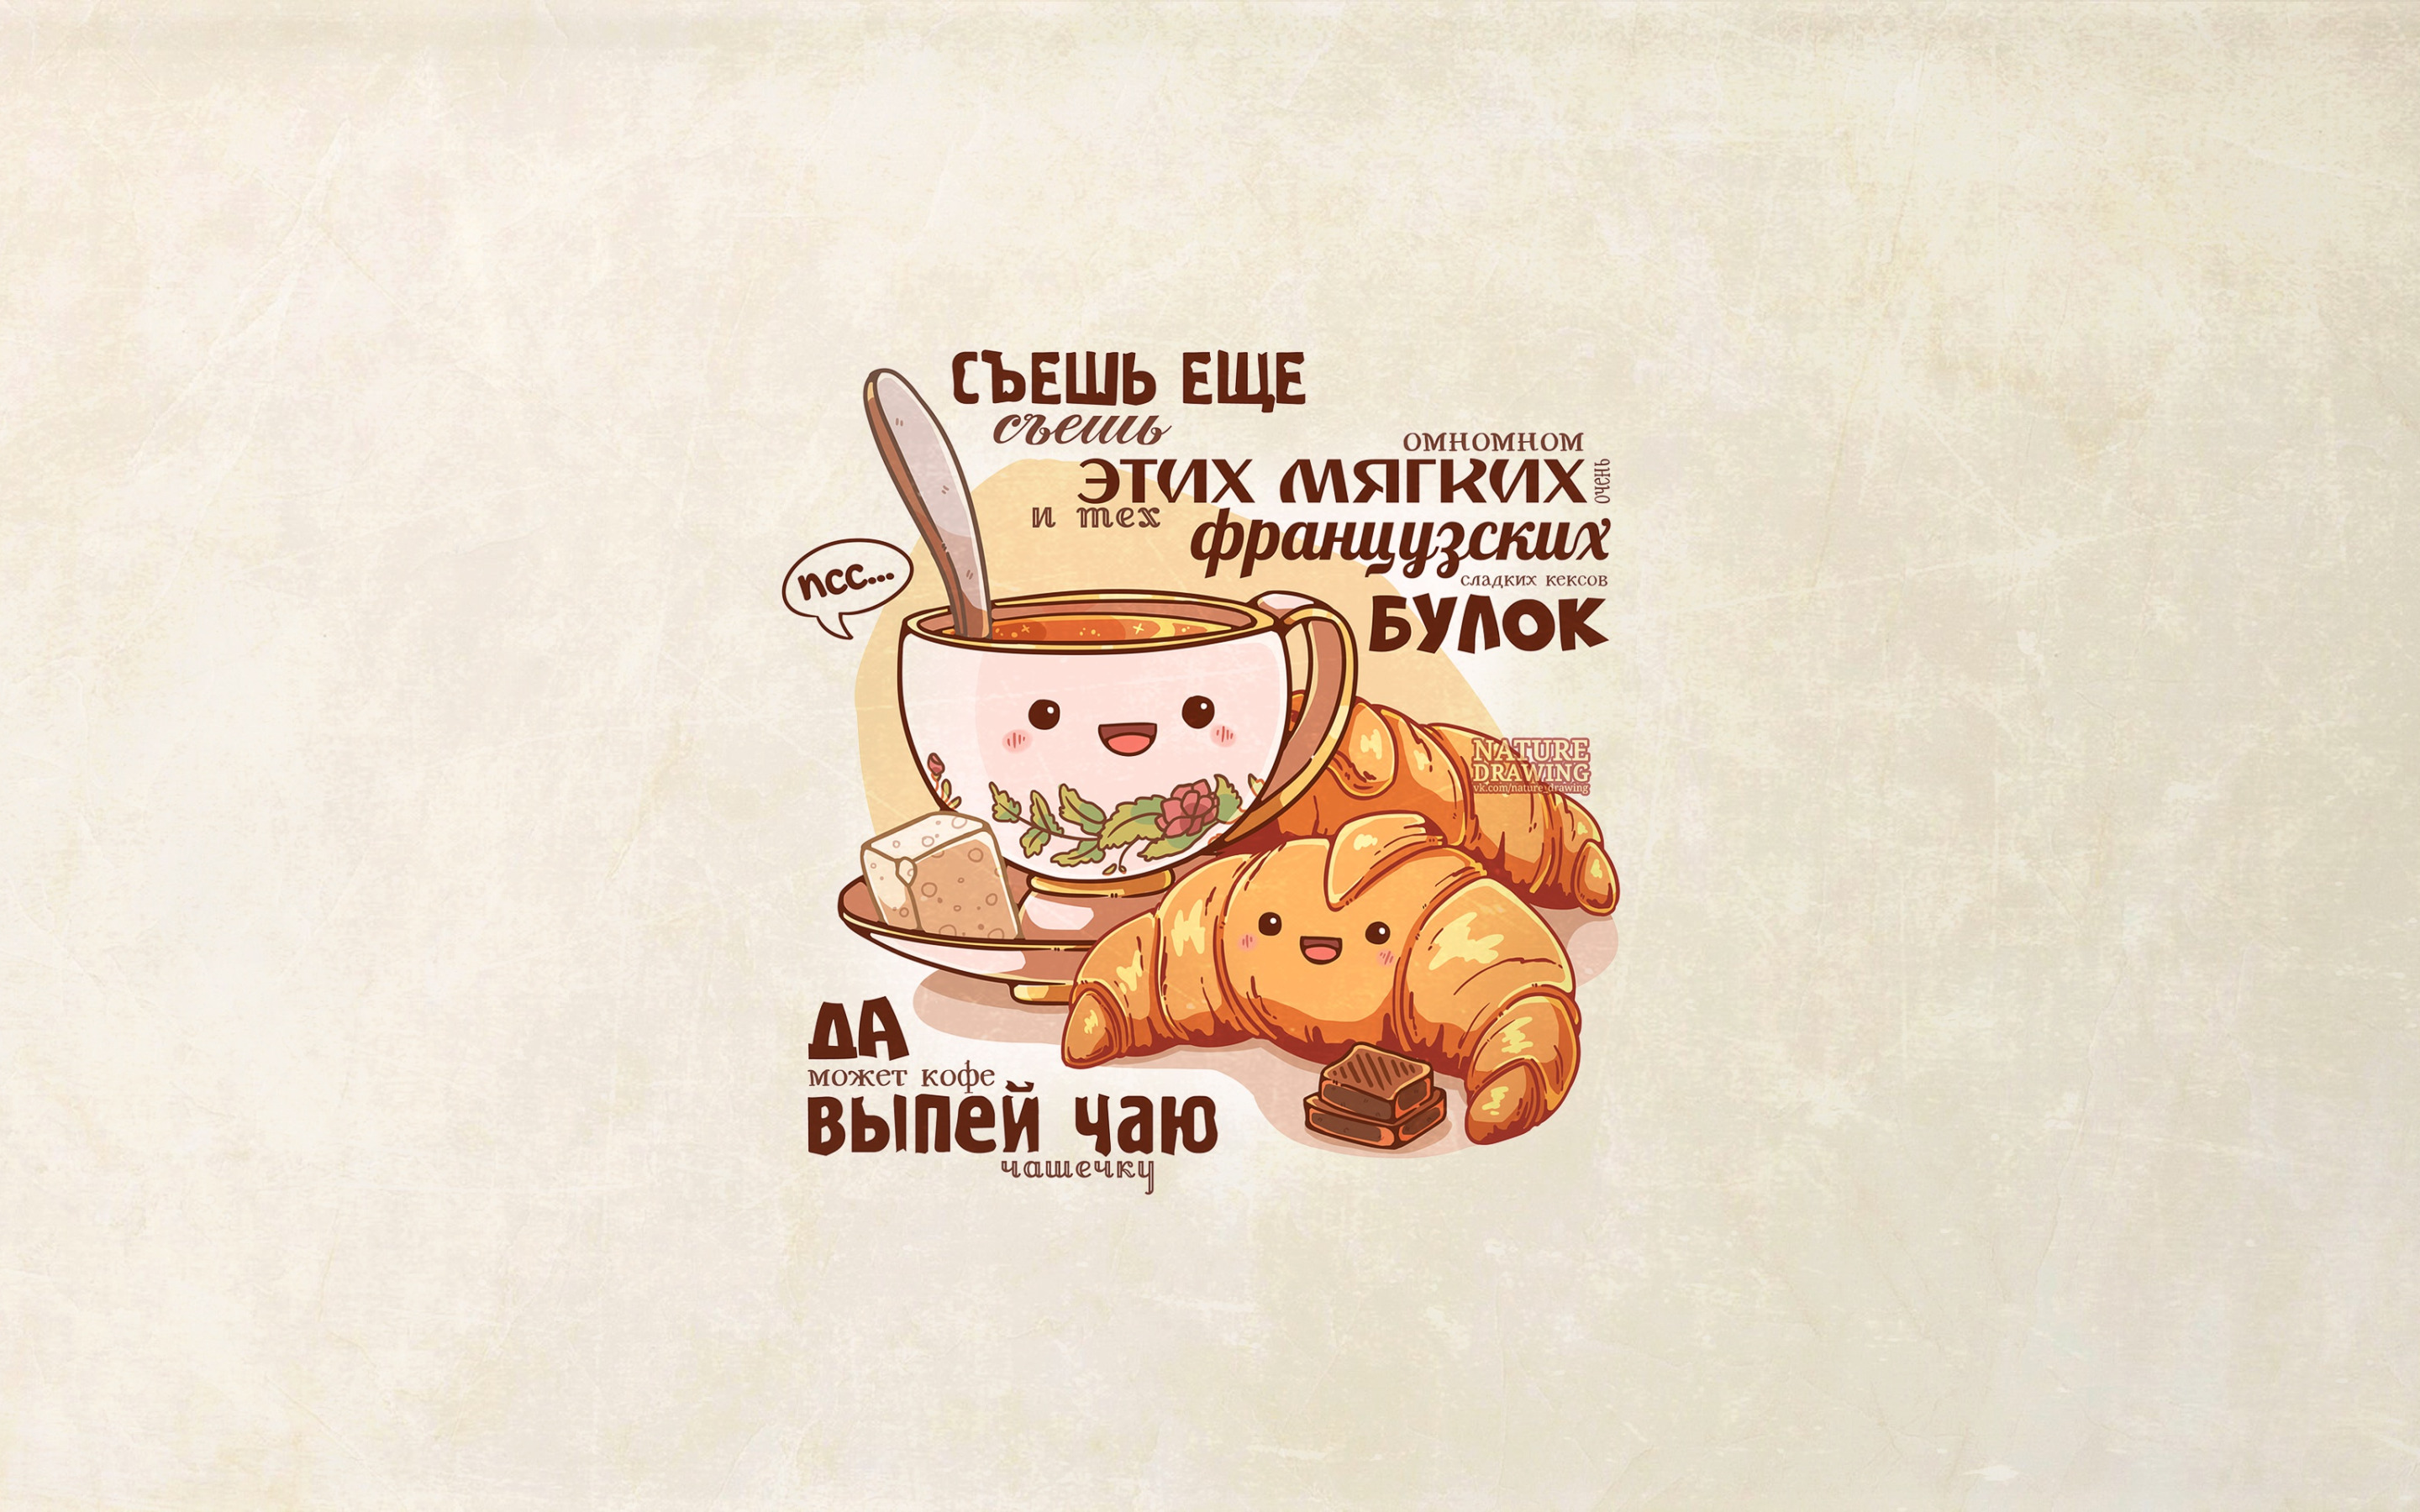 Чаепитие надпись. Смешные слоганы про еду. Смешные картинки про еду. Цитаты о еде. Забавные рисунки про еду.